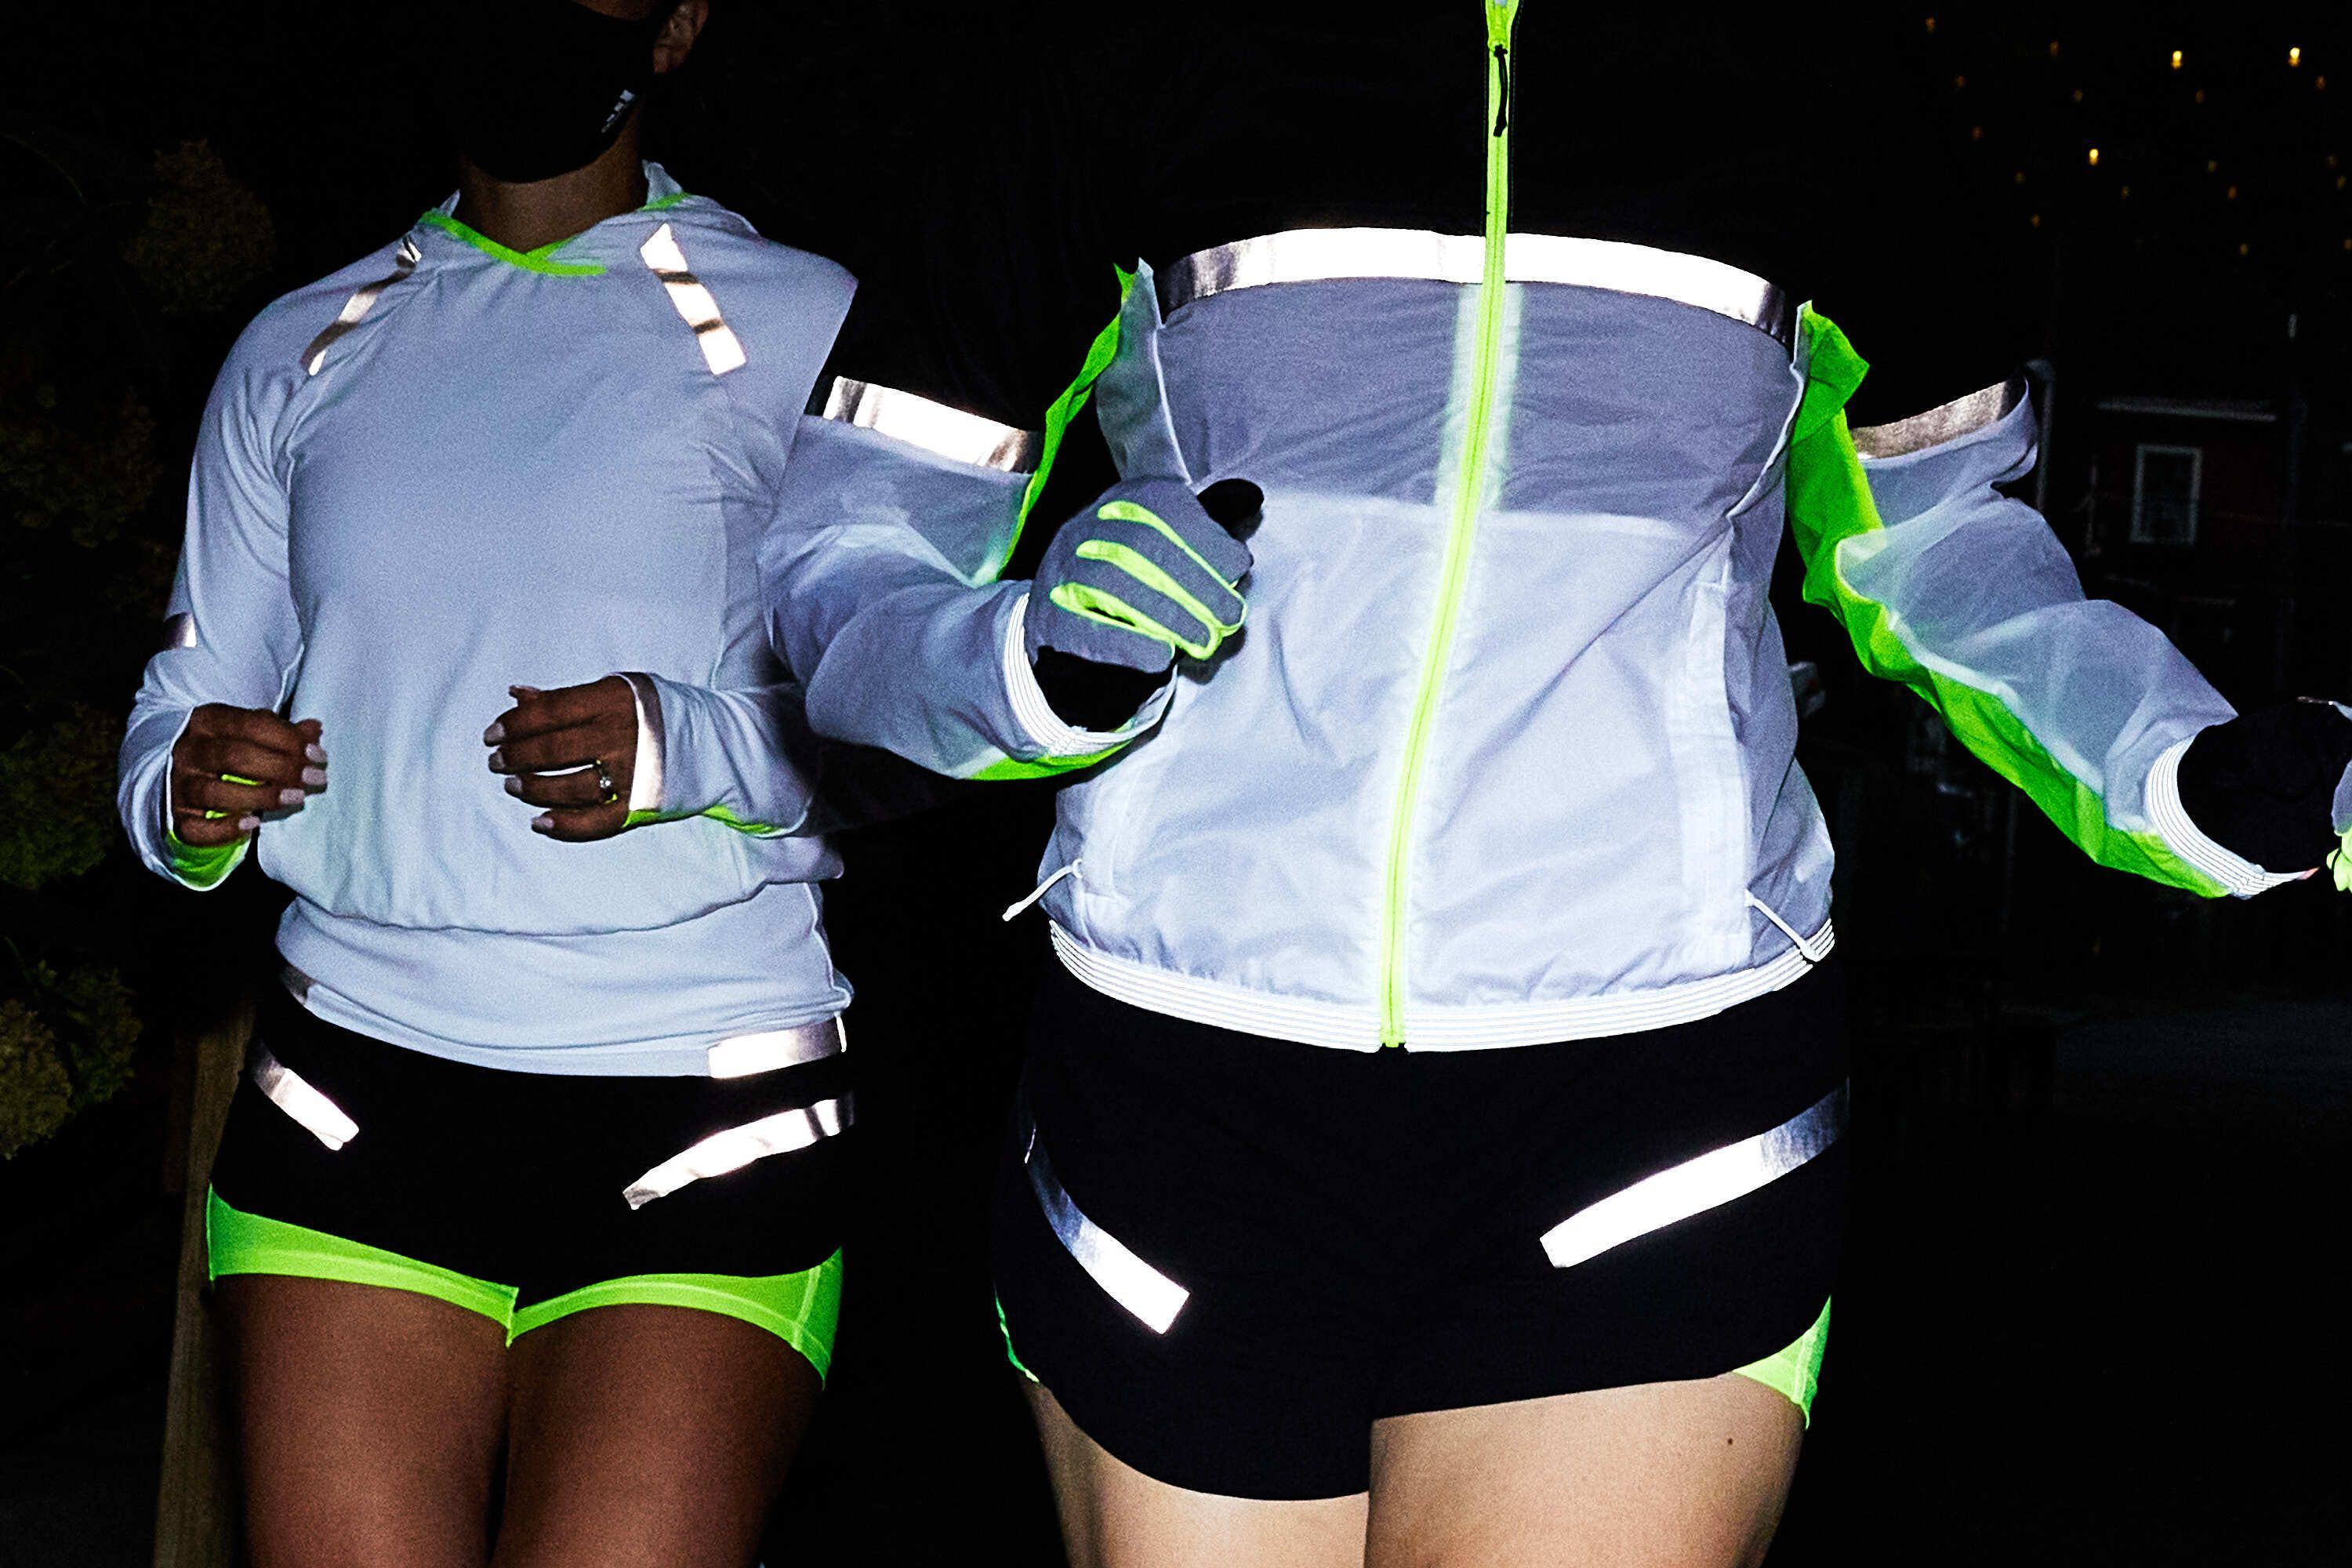 High Visibility Reflective Safety Vest Belt Gear For Running Jogging Safe Night 